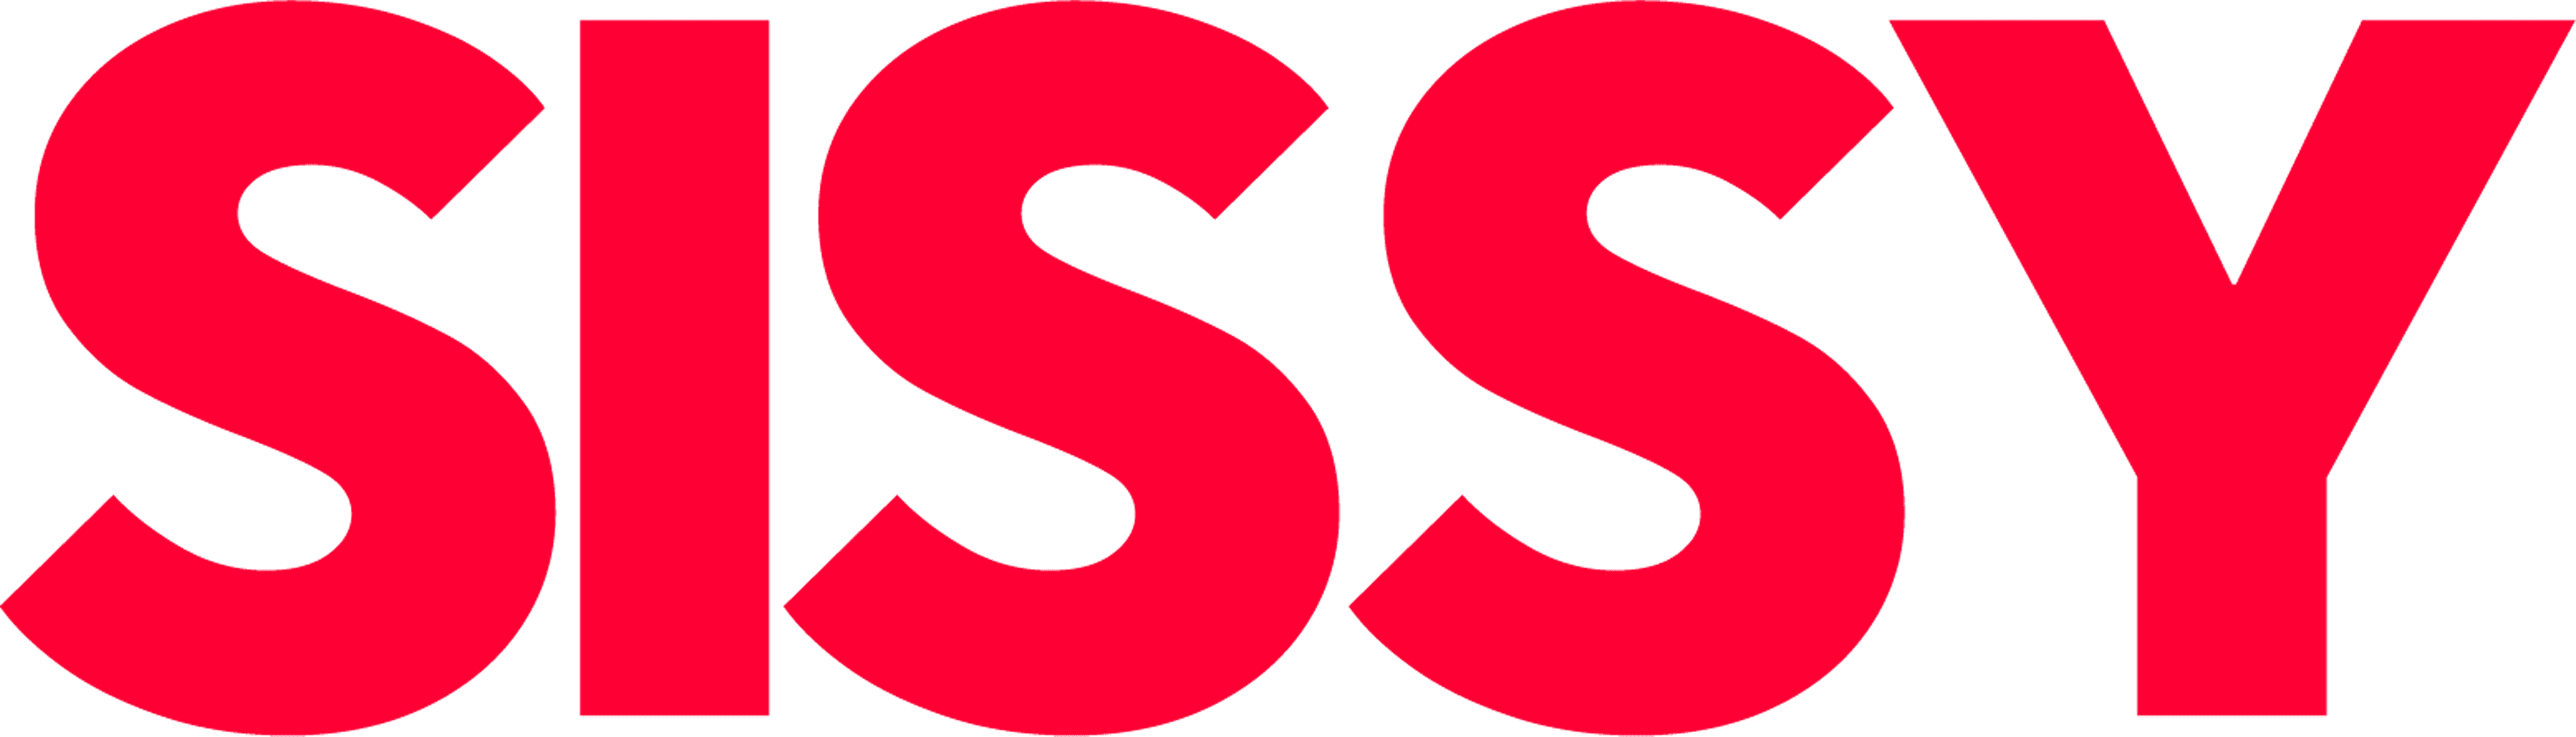 Sissy logo